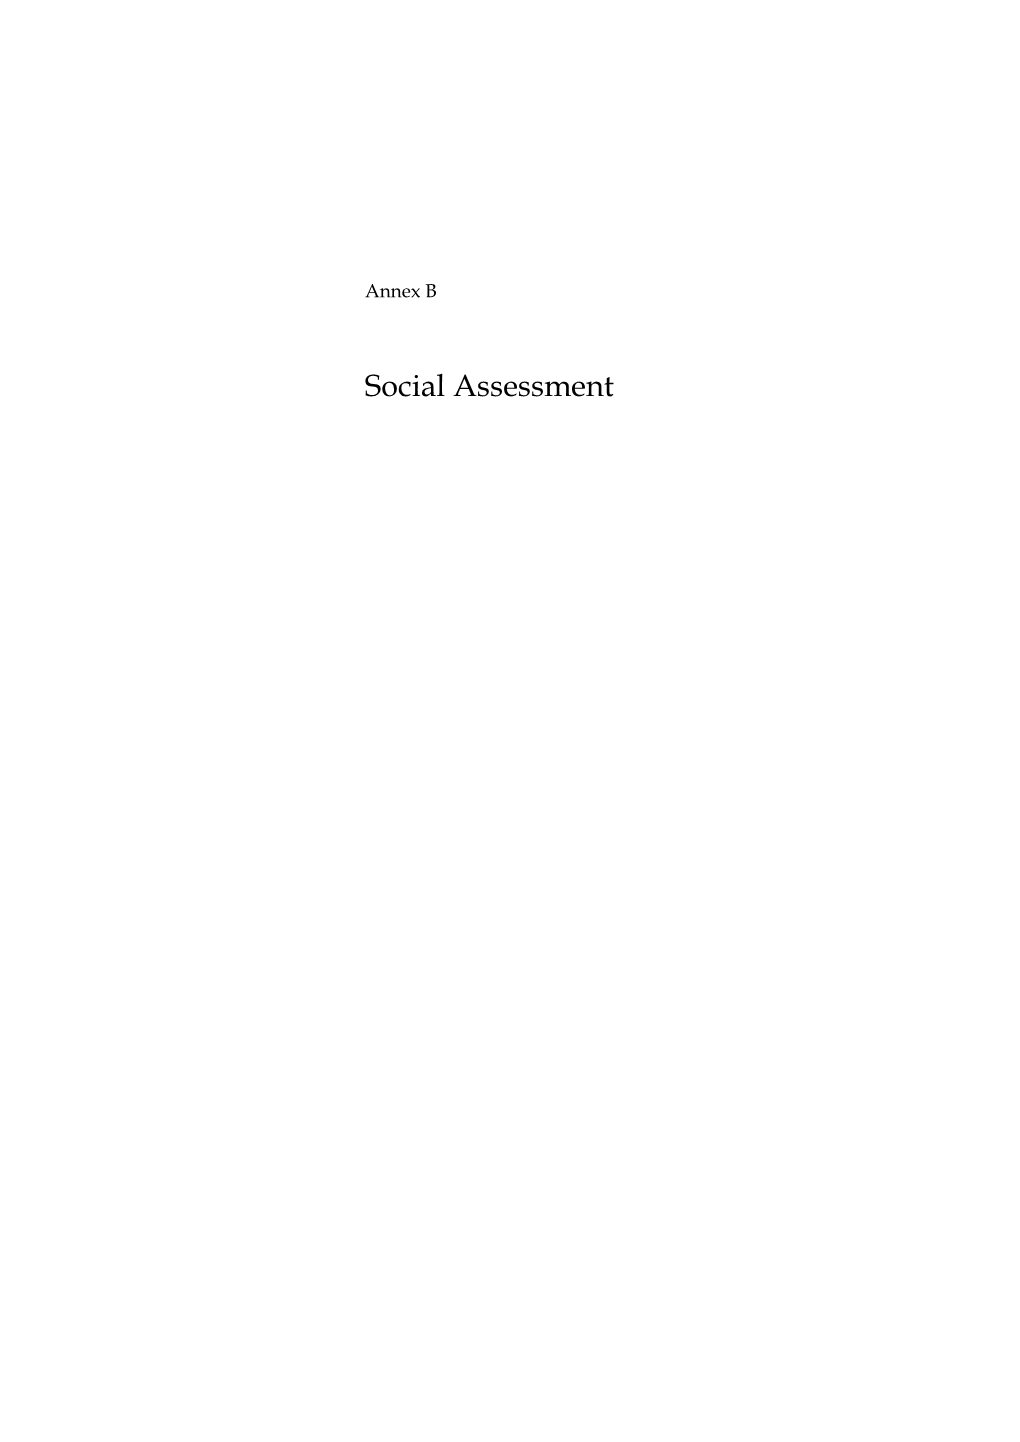 Social Assessment